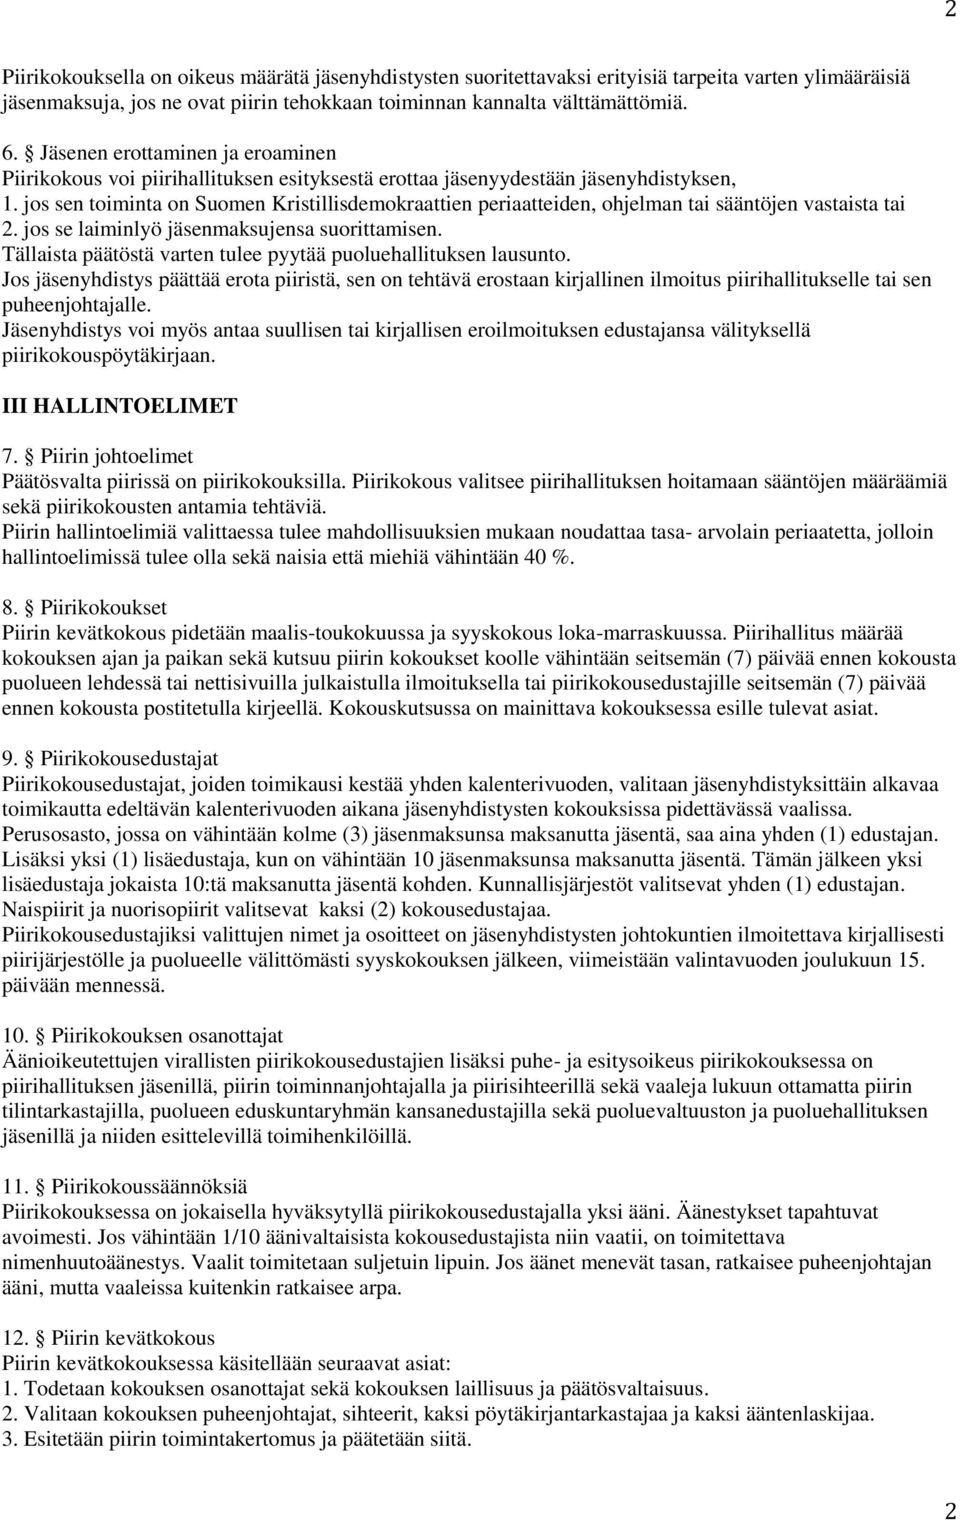 jos sen toiminta on Suomen Kristillisdemokraattien periaatteiden, ohjelman tai sääntöjen vastaista tai 2. jos se laiminlyö jäsenmaksujensa suorittamisen.